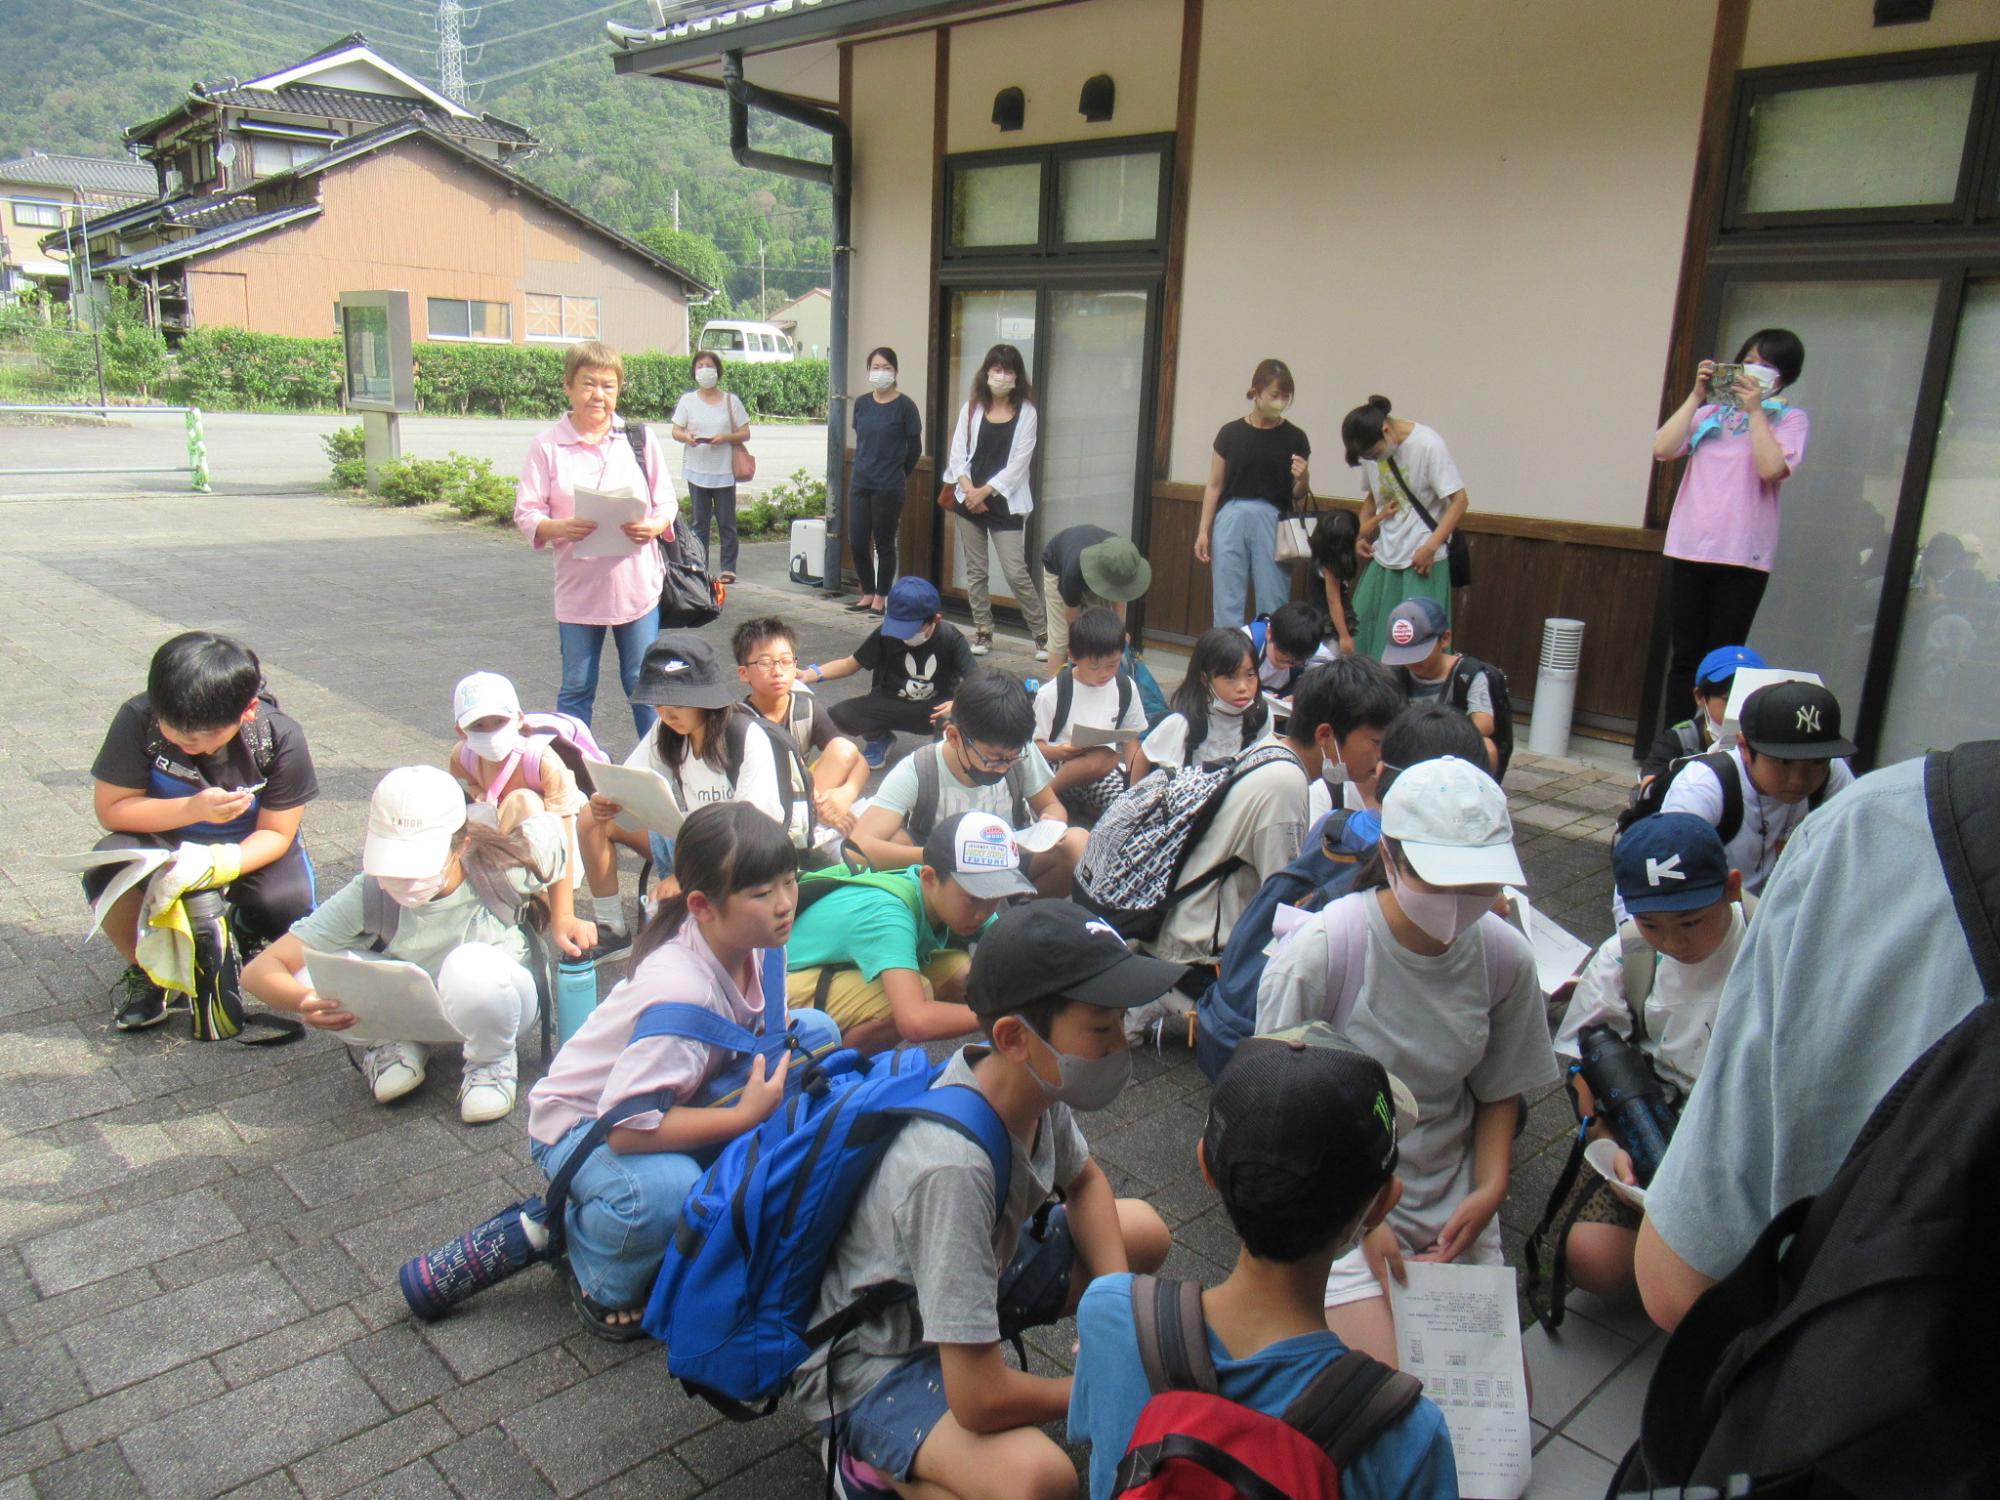 参加者が学遊館に集合し、研修のスケジュール説明を聞いている写真